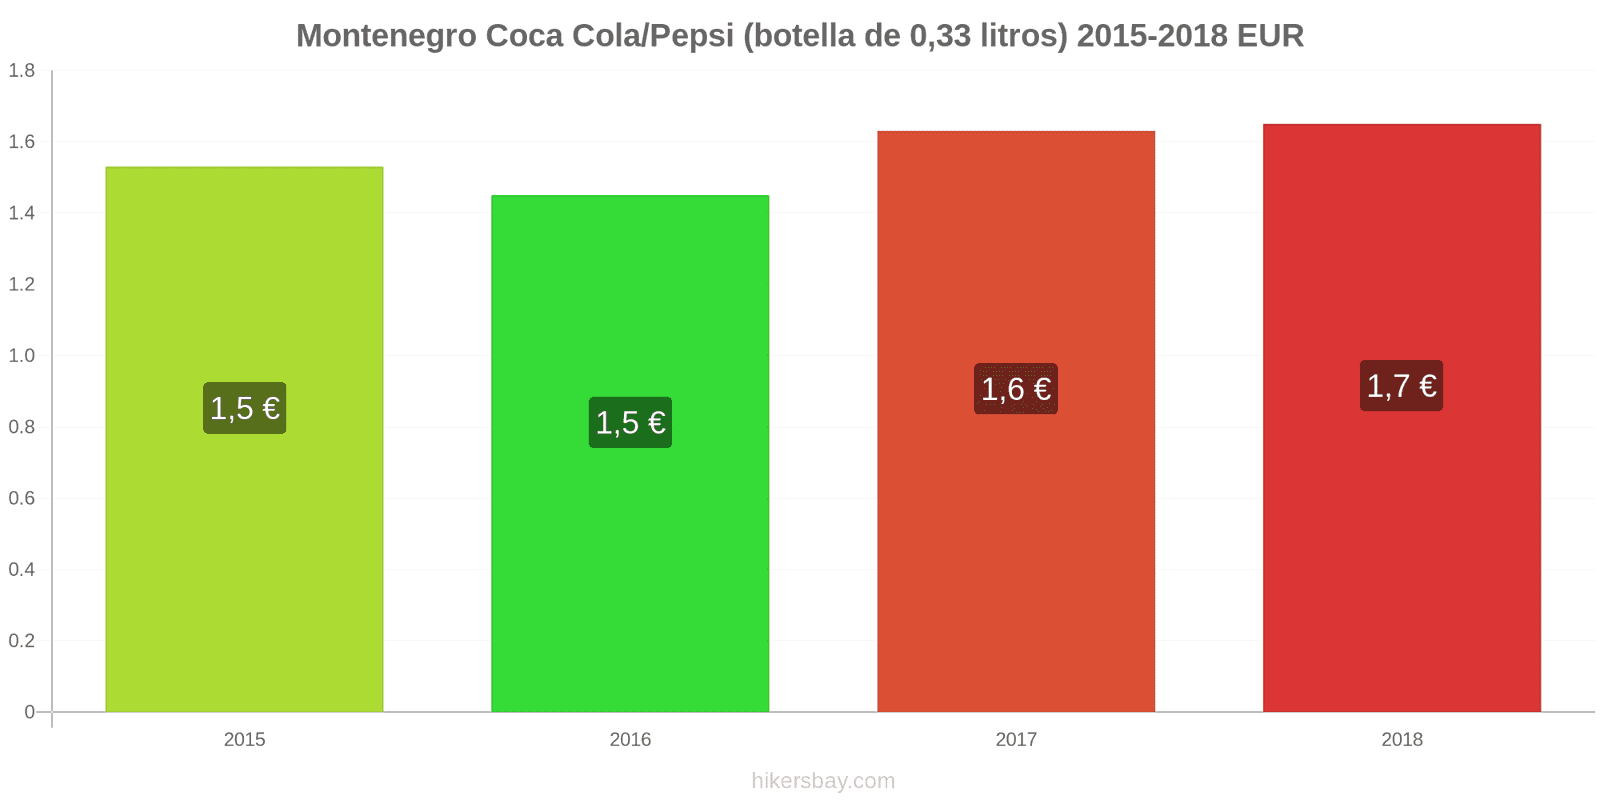 Montenegro cambios de precios Coca-Cola/Pepsi (botella de 0.33 litros) hikersbay.com